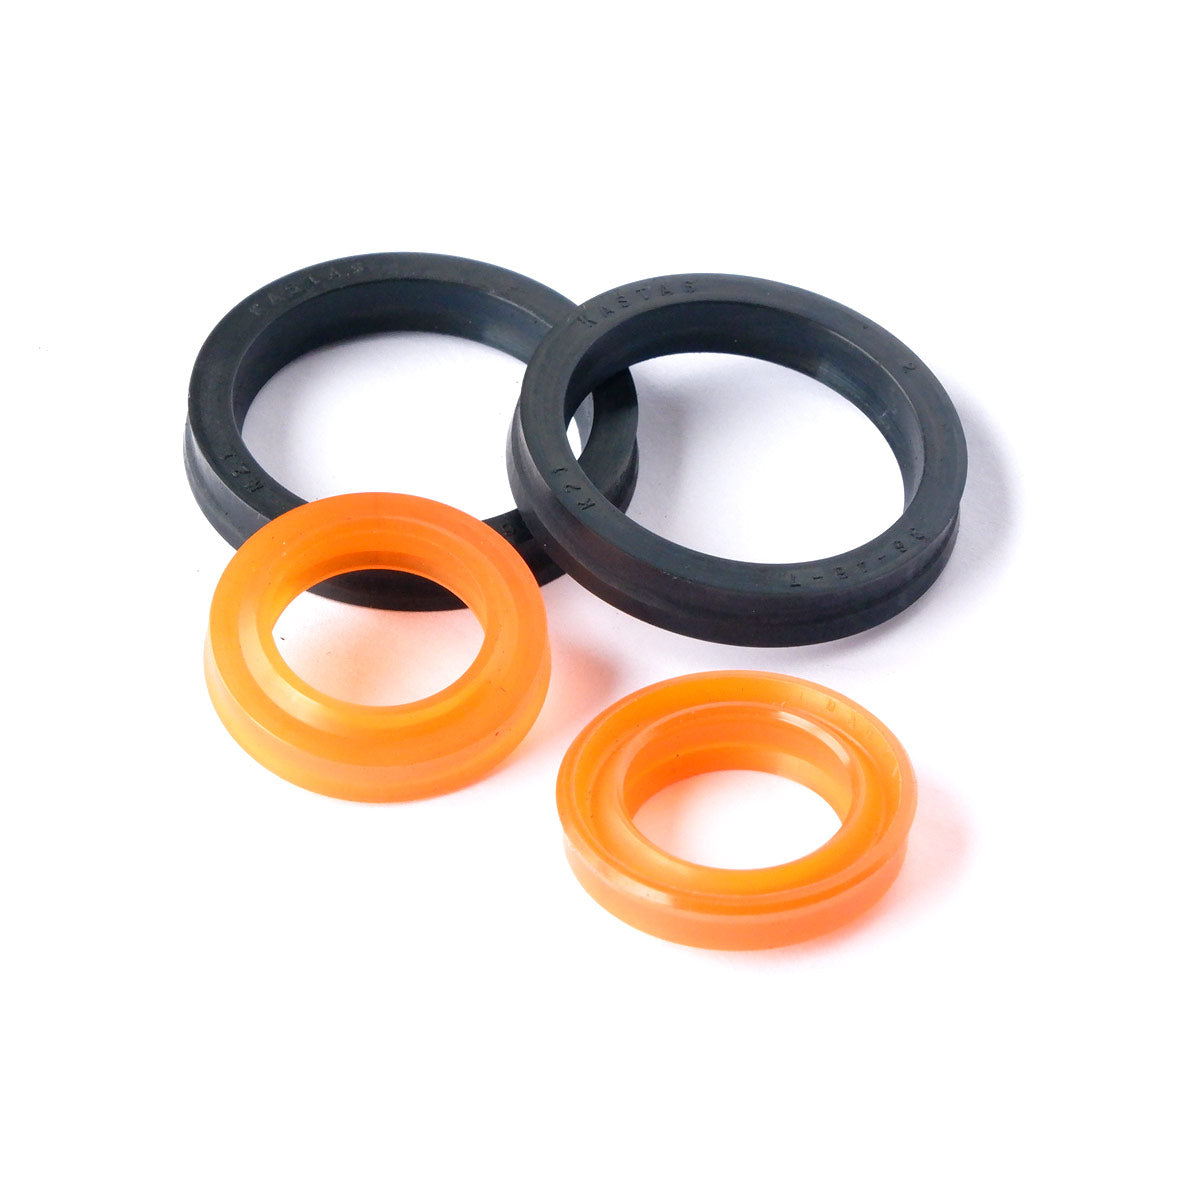 Horz Clamp Cylinder Piston Seals - Underpinner Spares